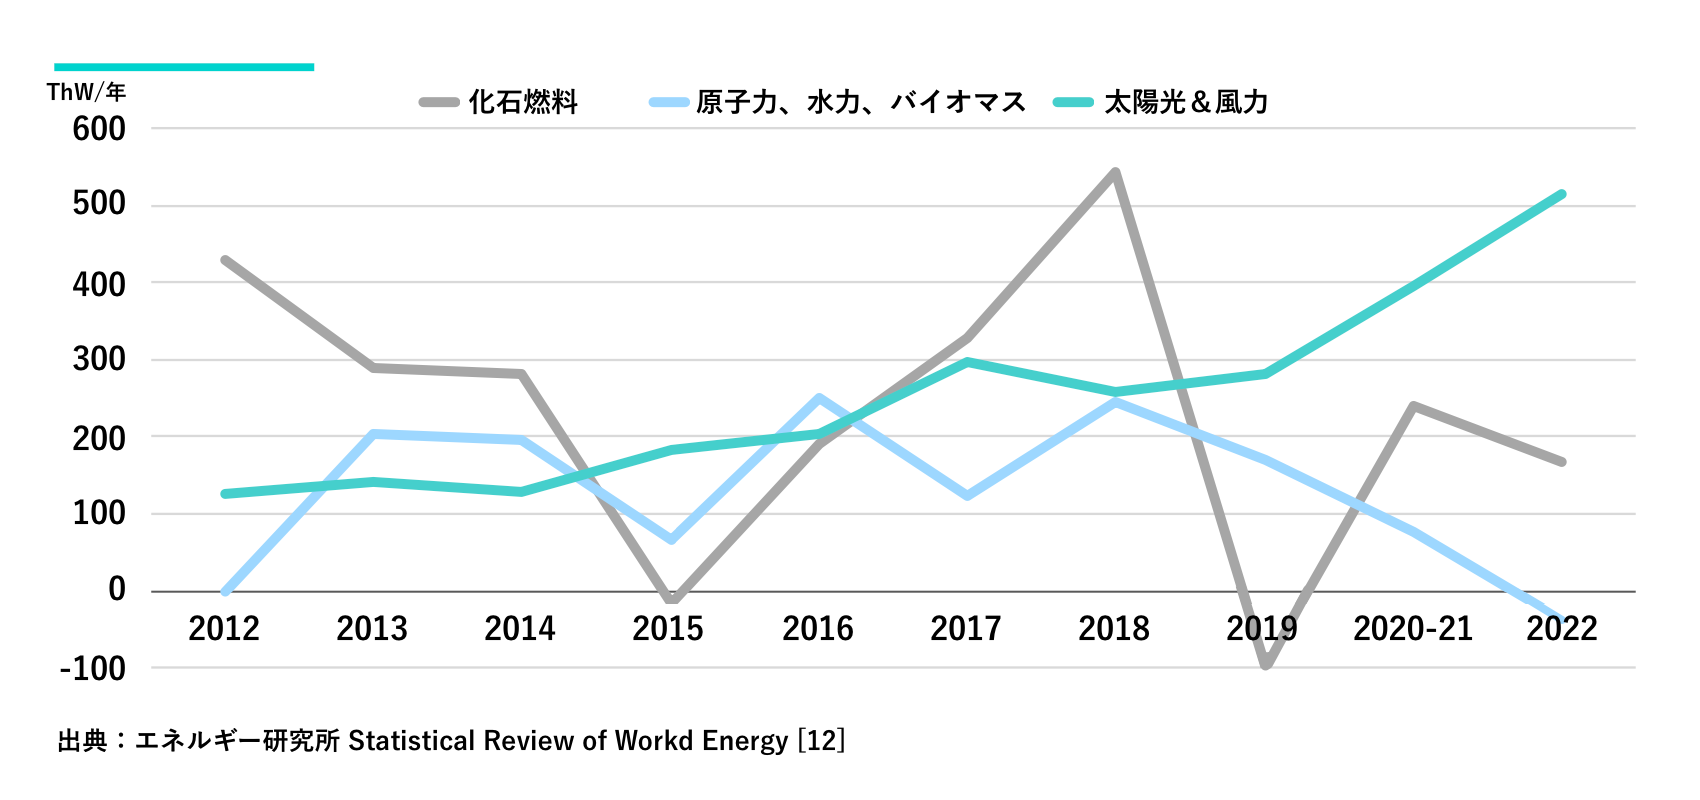 図18. 発電供給量の変化（TWh/年）